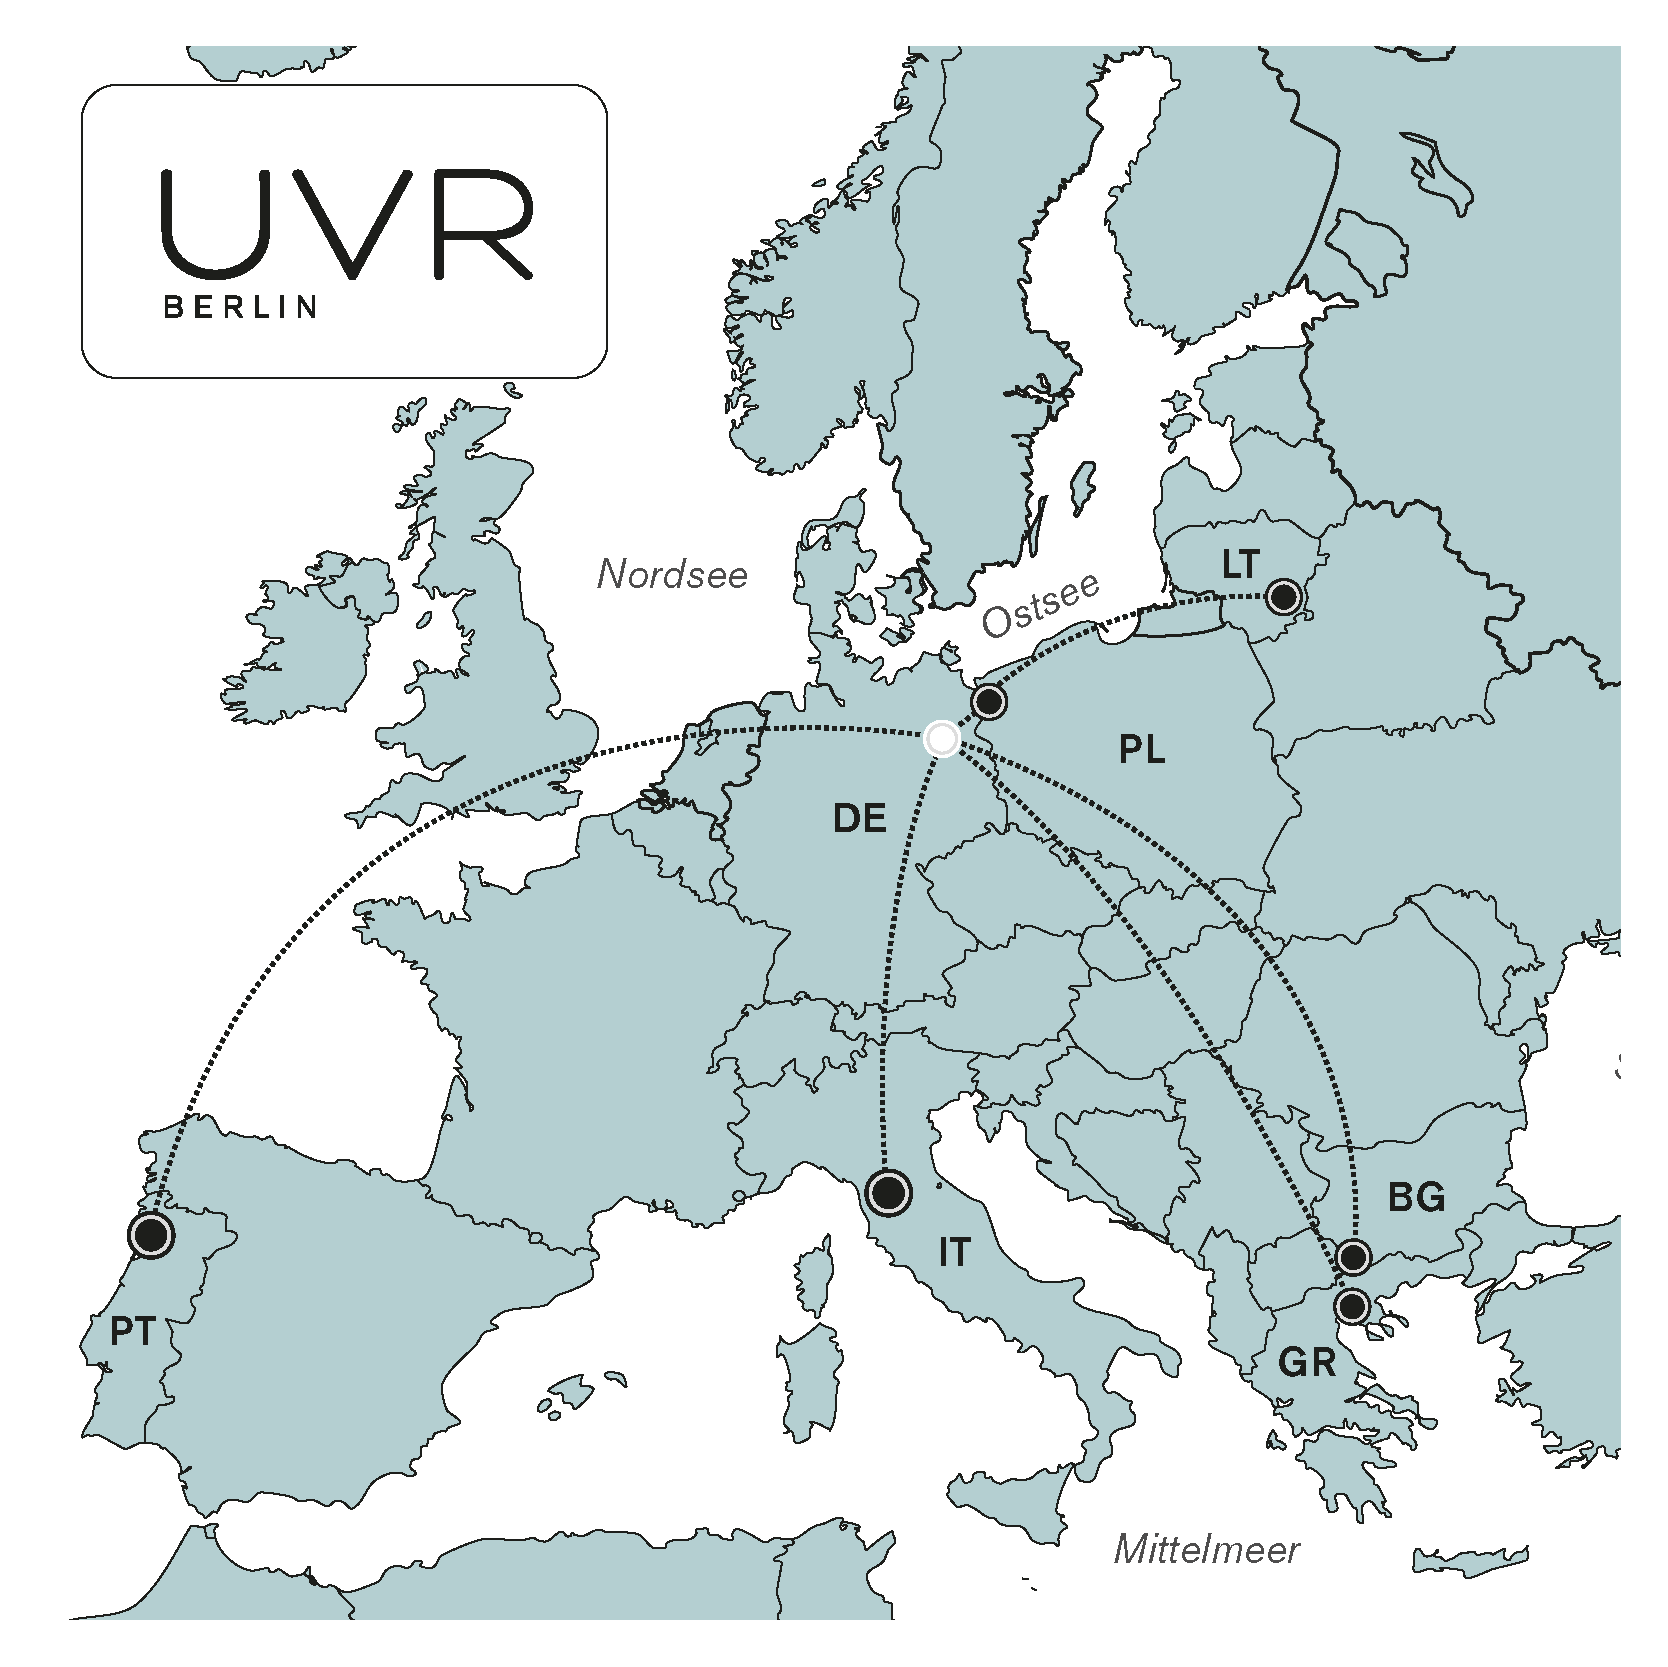 Nachhaltige Produktionsstätten von UVR Berlin in Europa – Fair Fashion mit sozialer und ökologischer Verantwortung